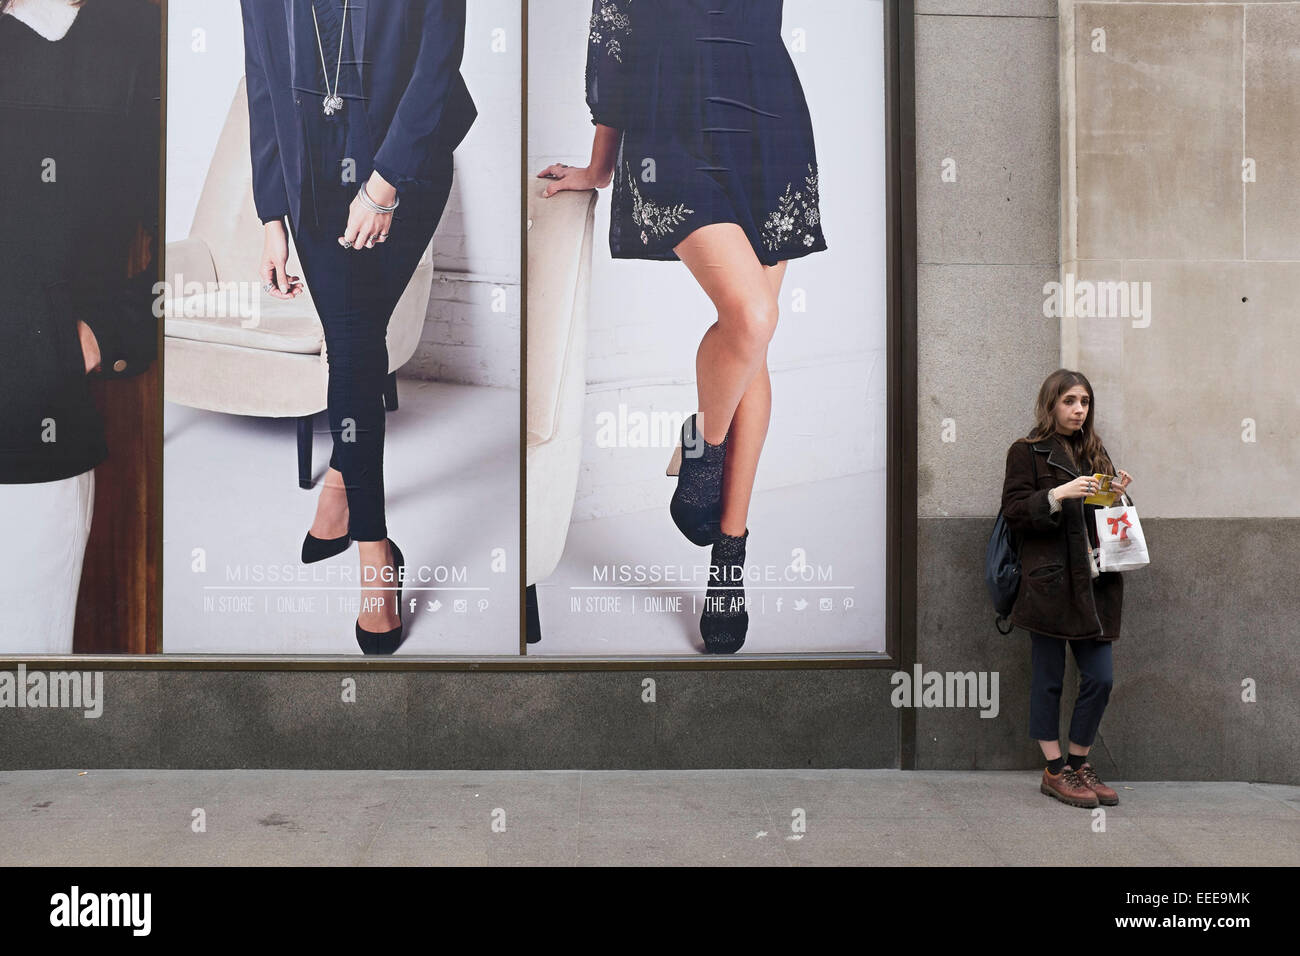 Ragazza il rotolamento e fumare una sigaretta in piedi accanto ad alcune grandi immagini pubblicitarie al di fuori di un negozio di moda. Londra, Regno Unito. Foto Stock